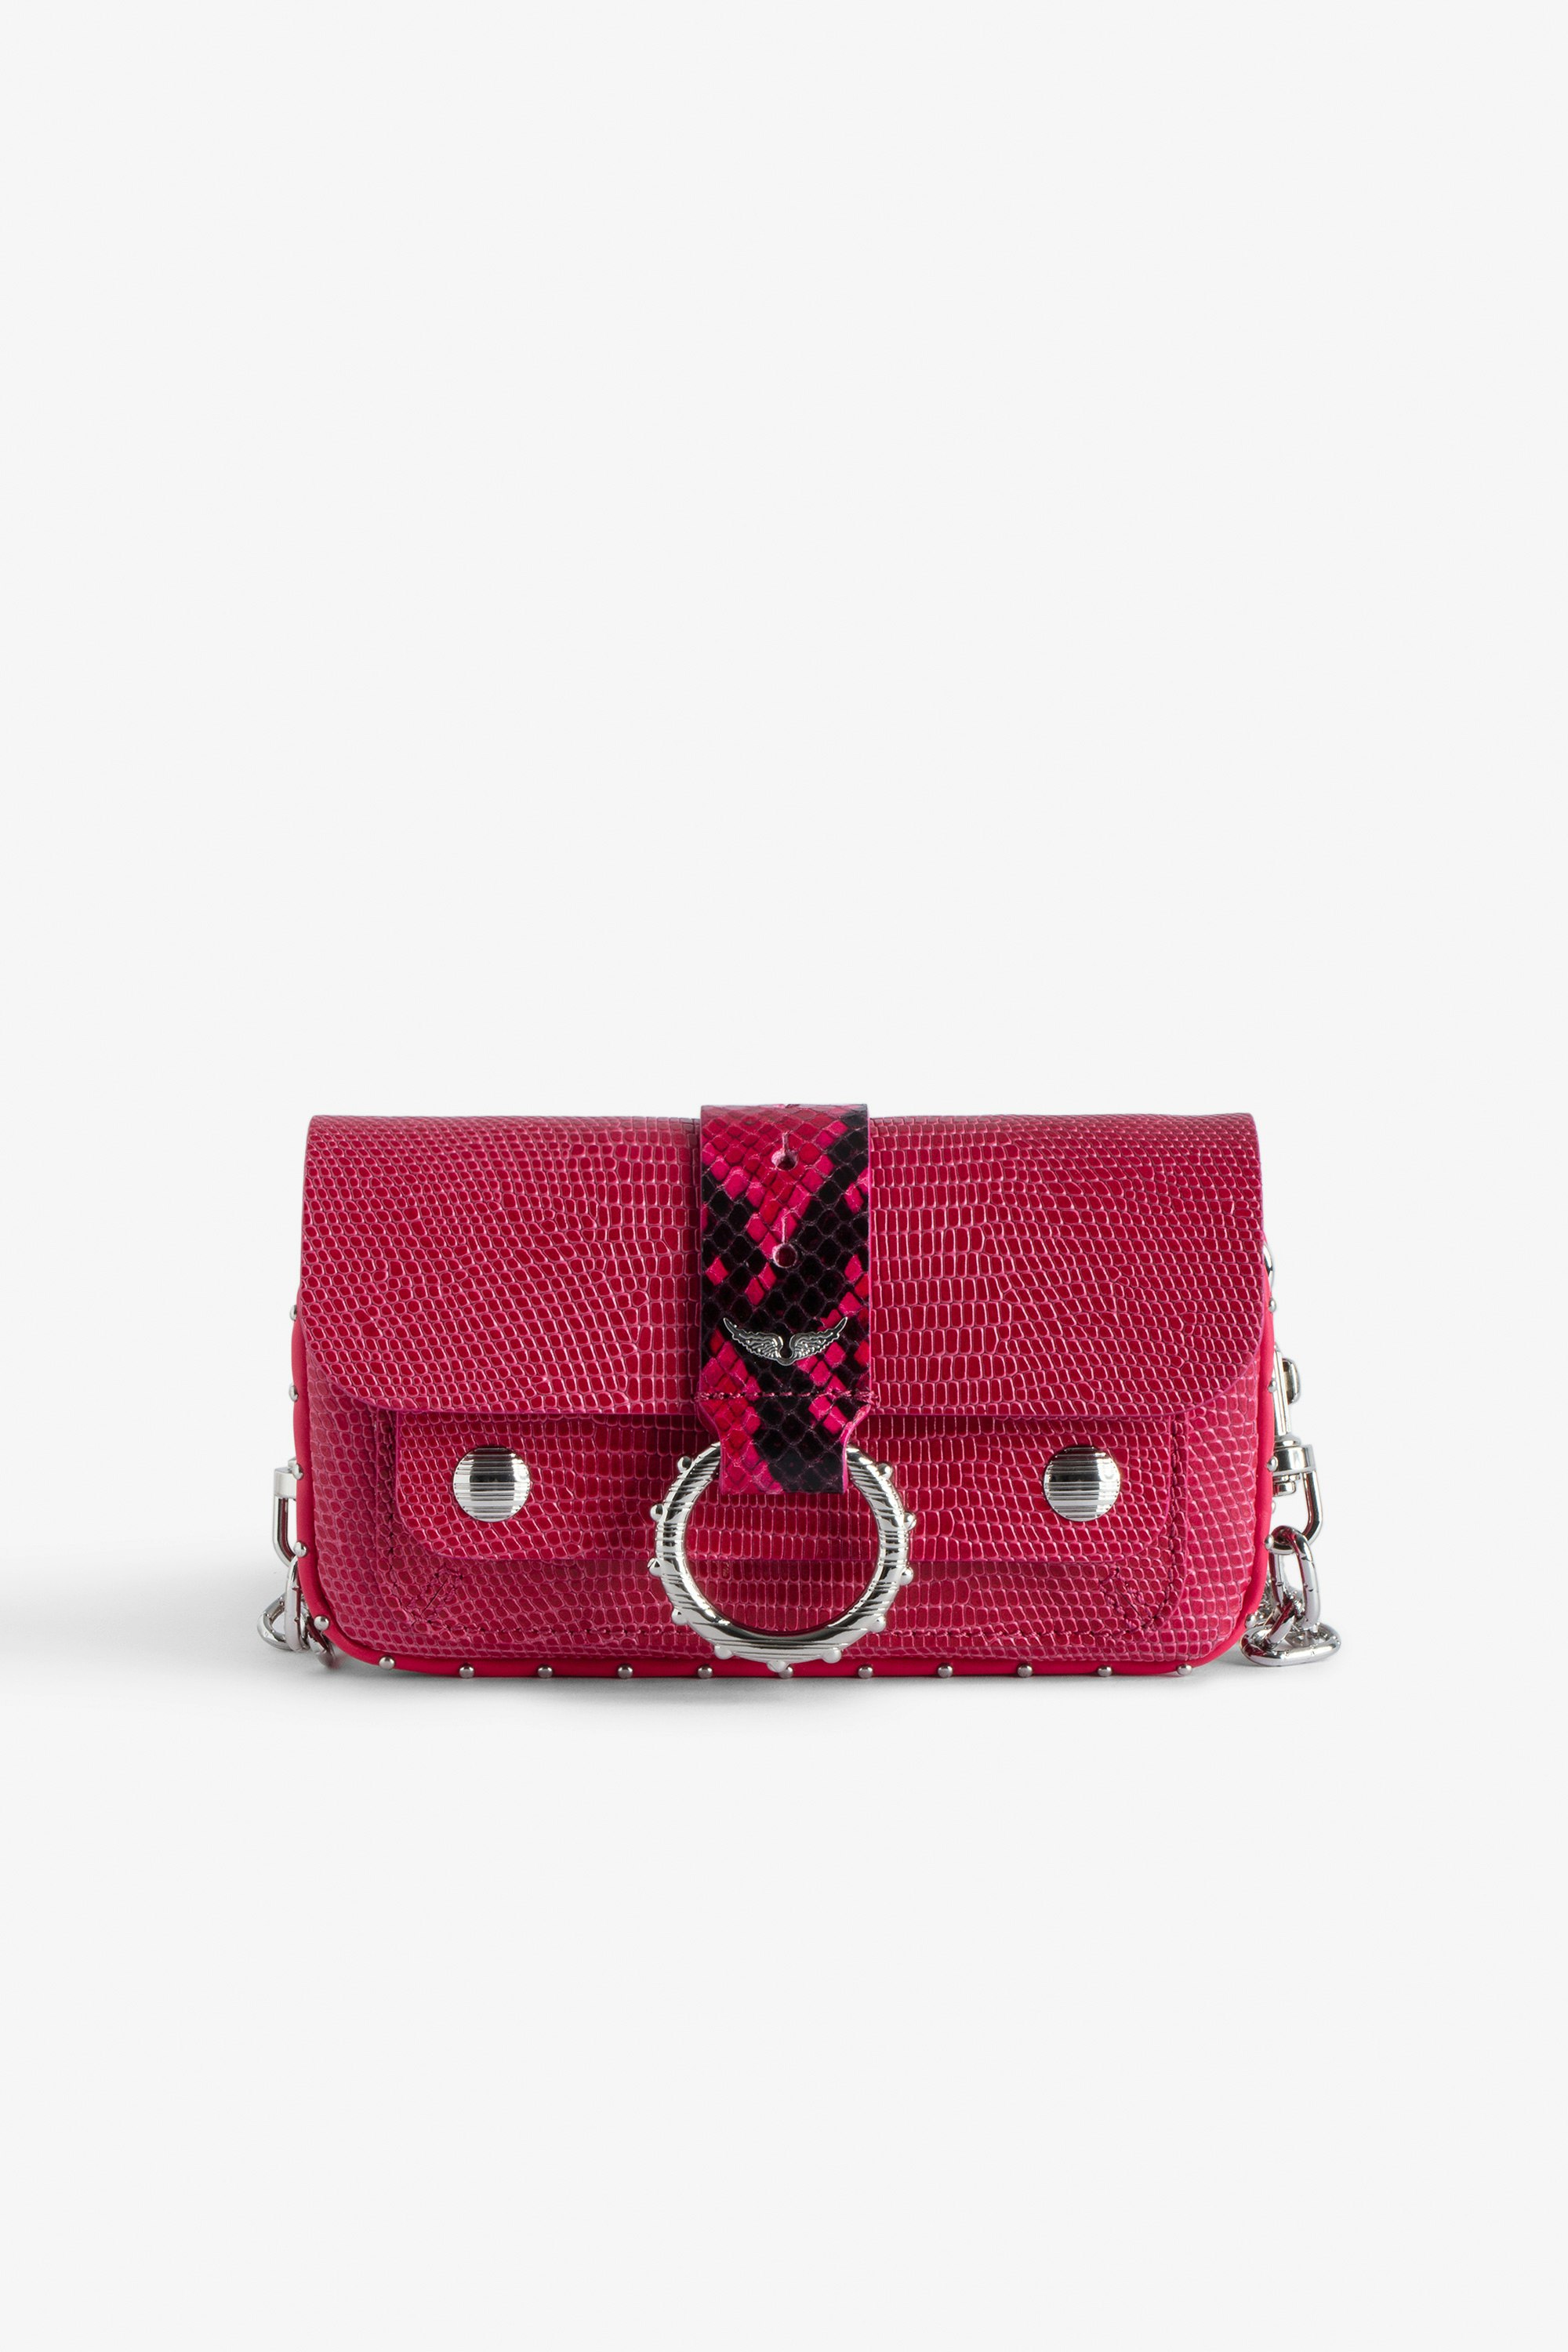 Sac Kate Wallet Embossé - Mini sac en cuir embossé rose effet iguane à chaîne en métal.